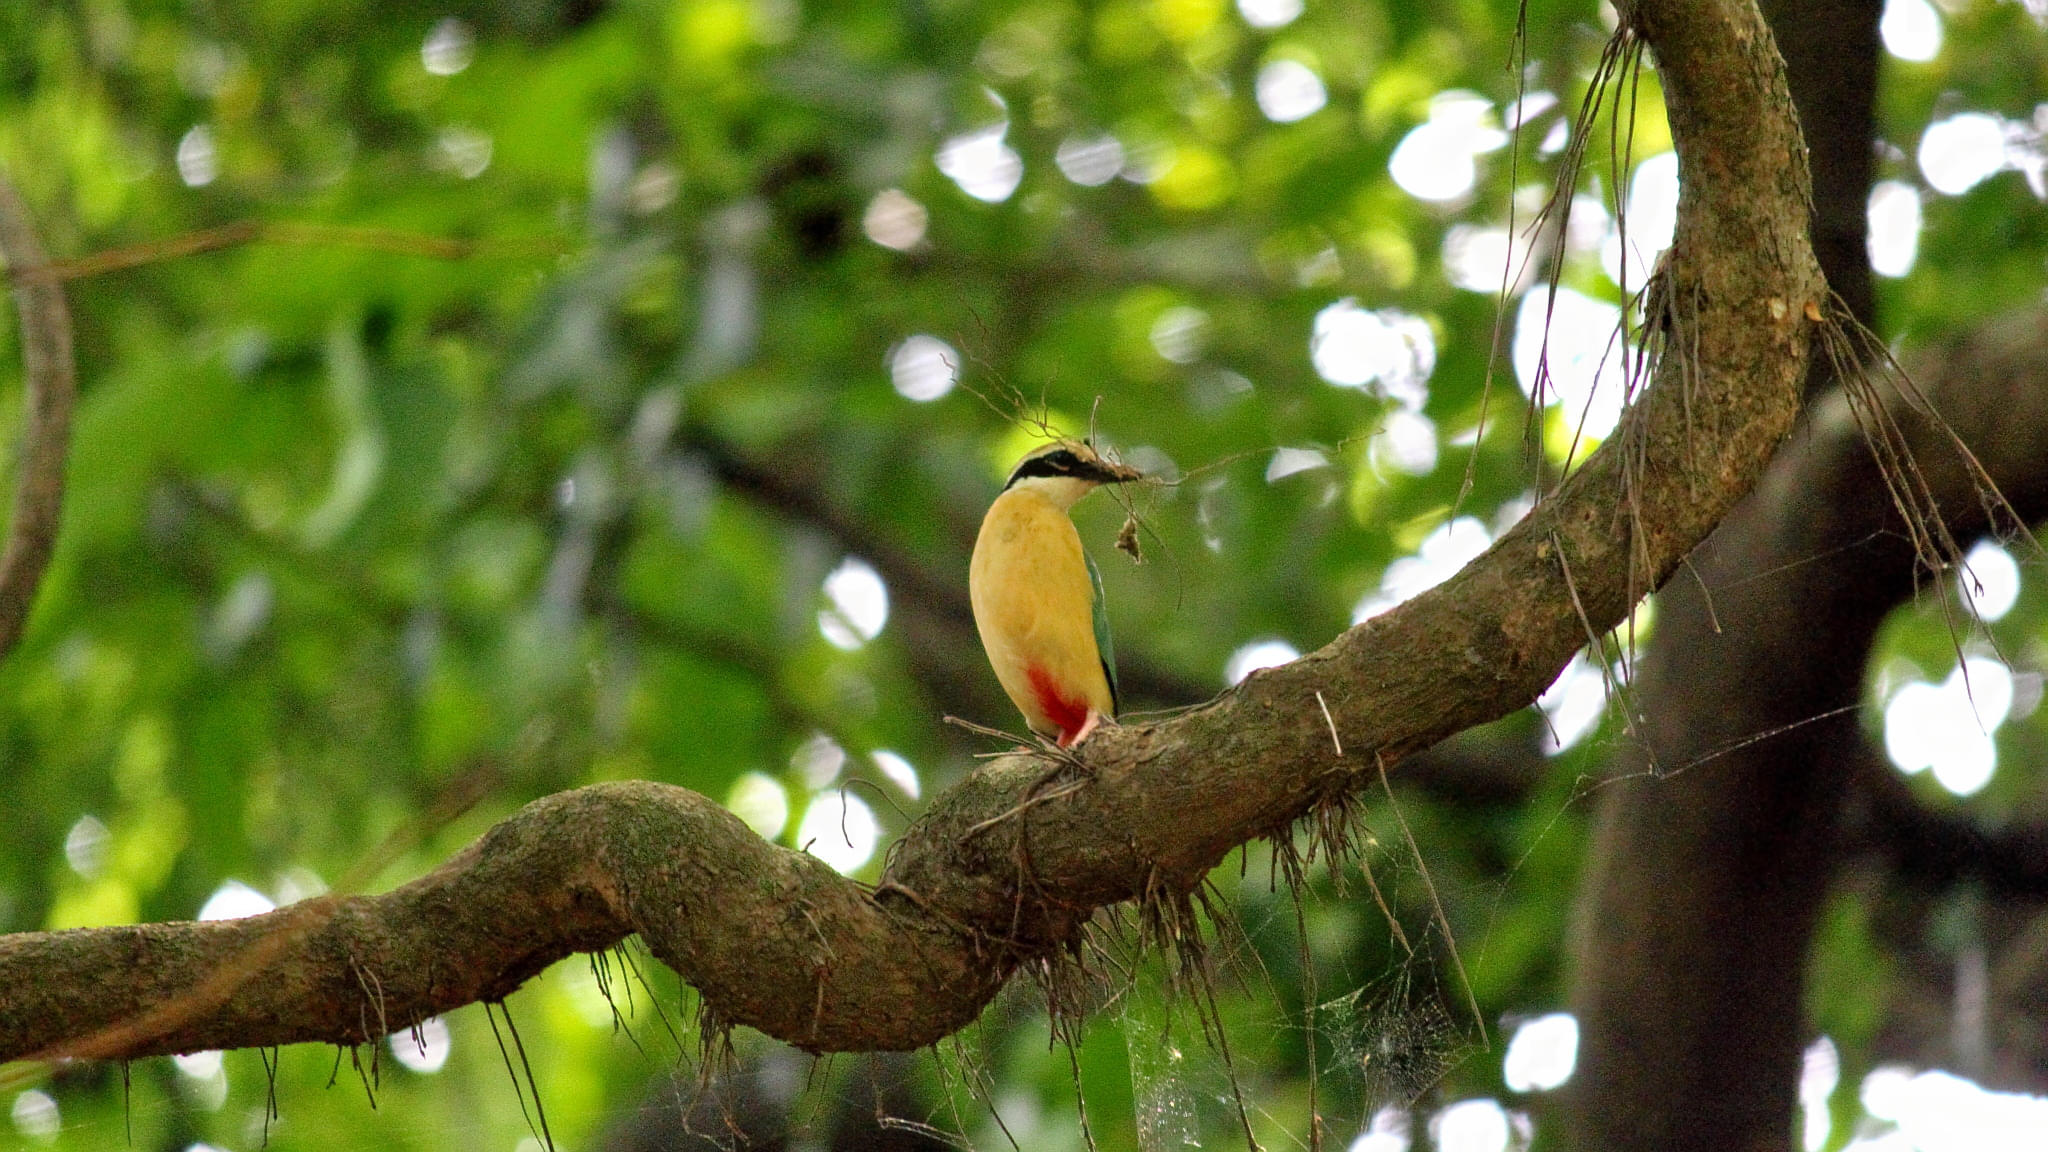 Karnala Bird Sanctuary